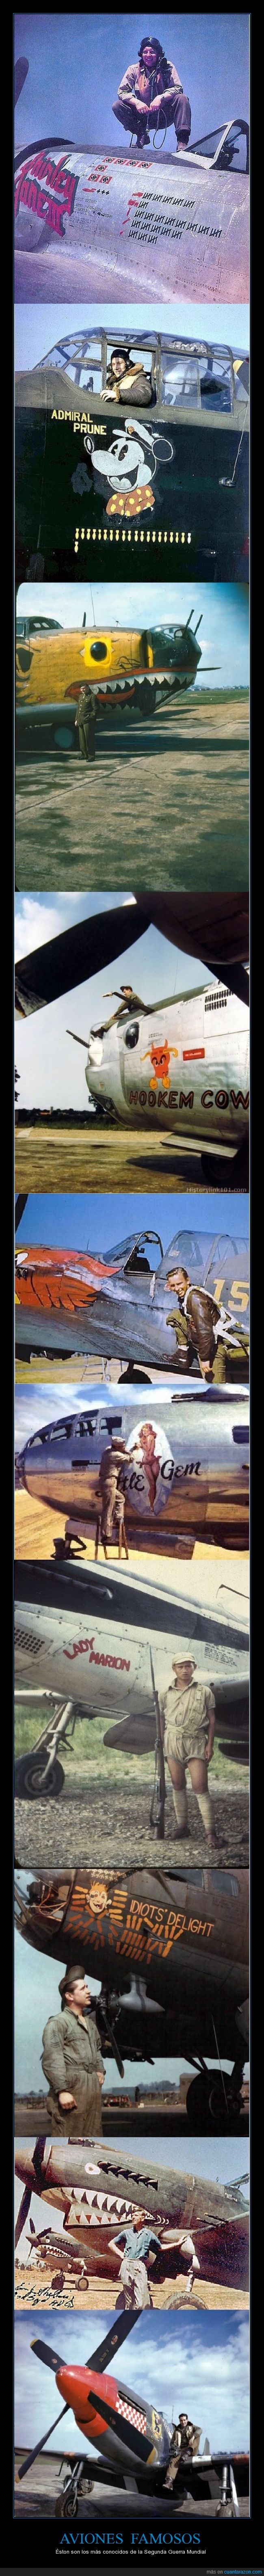 pintado,pintar,aviación,P-40 Warhawk,guerra,aviones